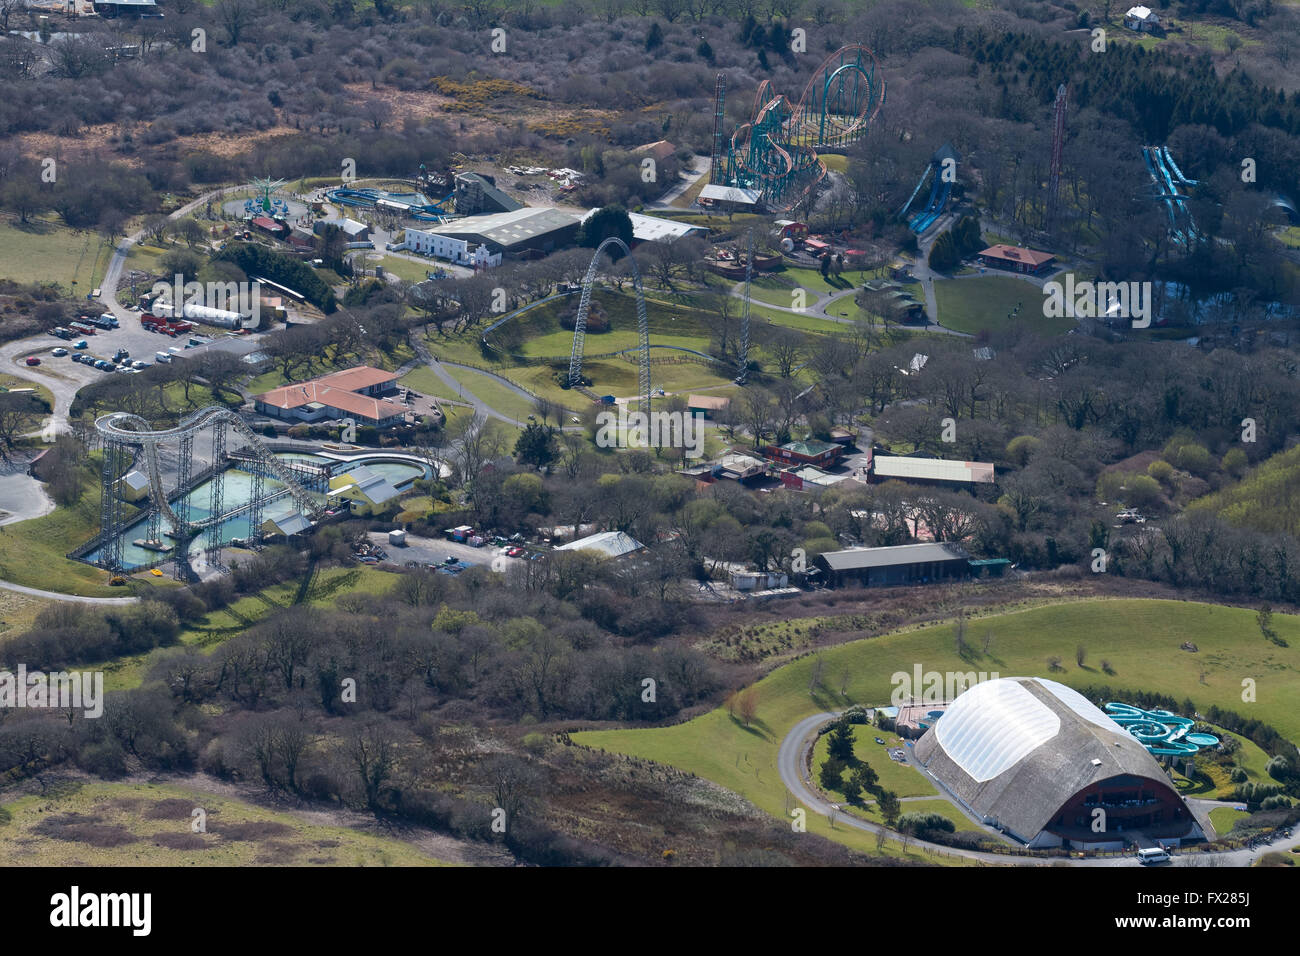 Vue aérienne de l'Oakwood Theme Park à Tenby, Pembrokeshire, Pays de Galles montrant rides Hydro, vertige, la cime des arbres, rebond et la vitesse. Banque D'Images